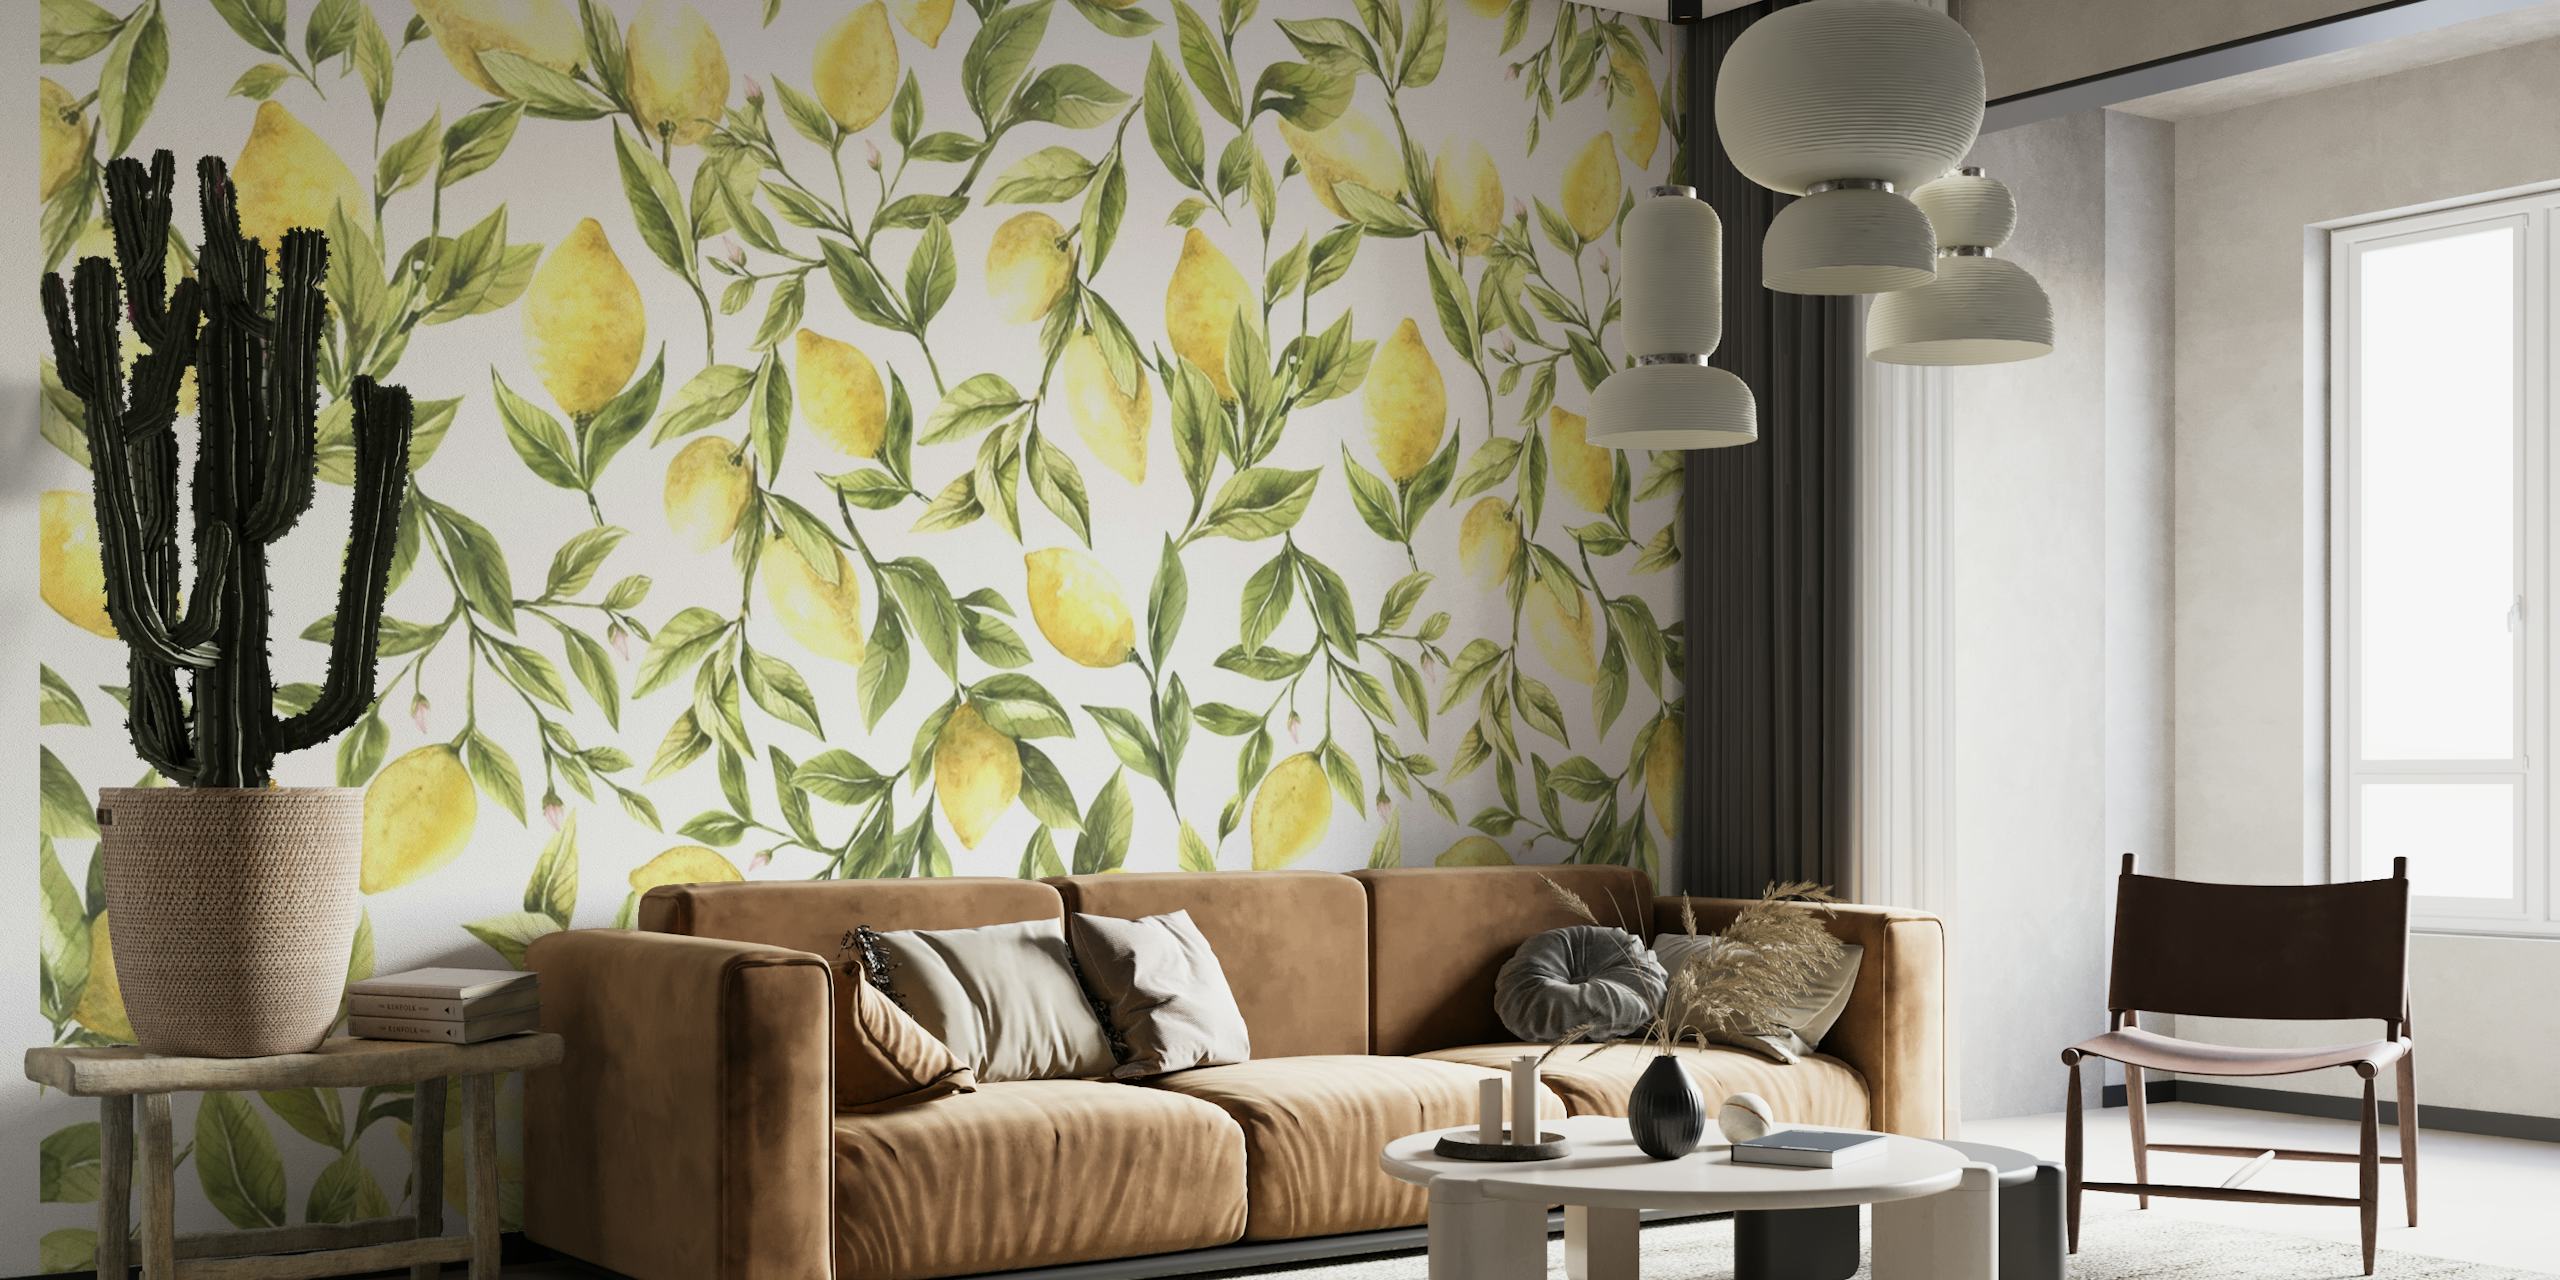 Livligt och uppfriskande mönster av gula citroner med grönt bladverk för en väggmålning.